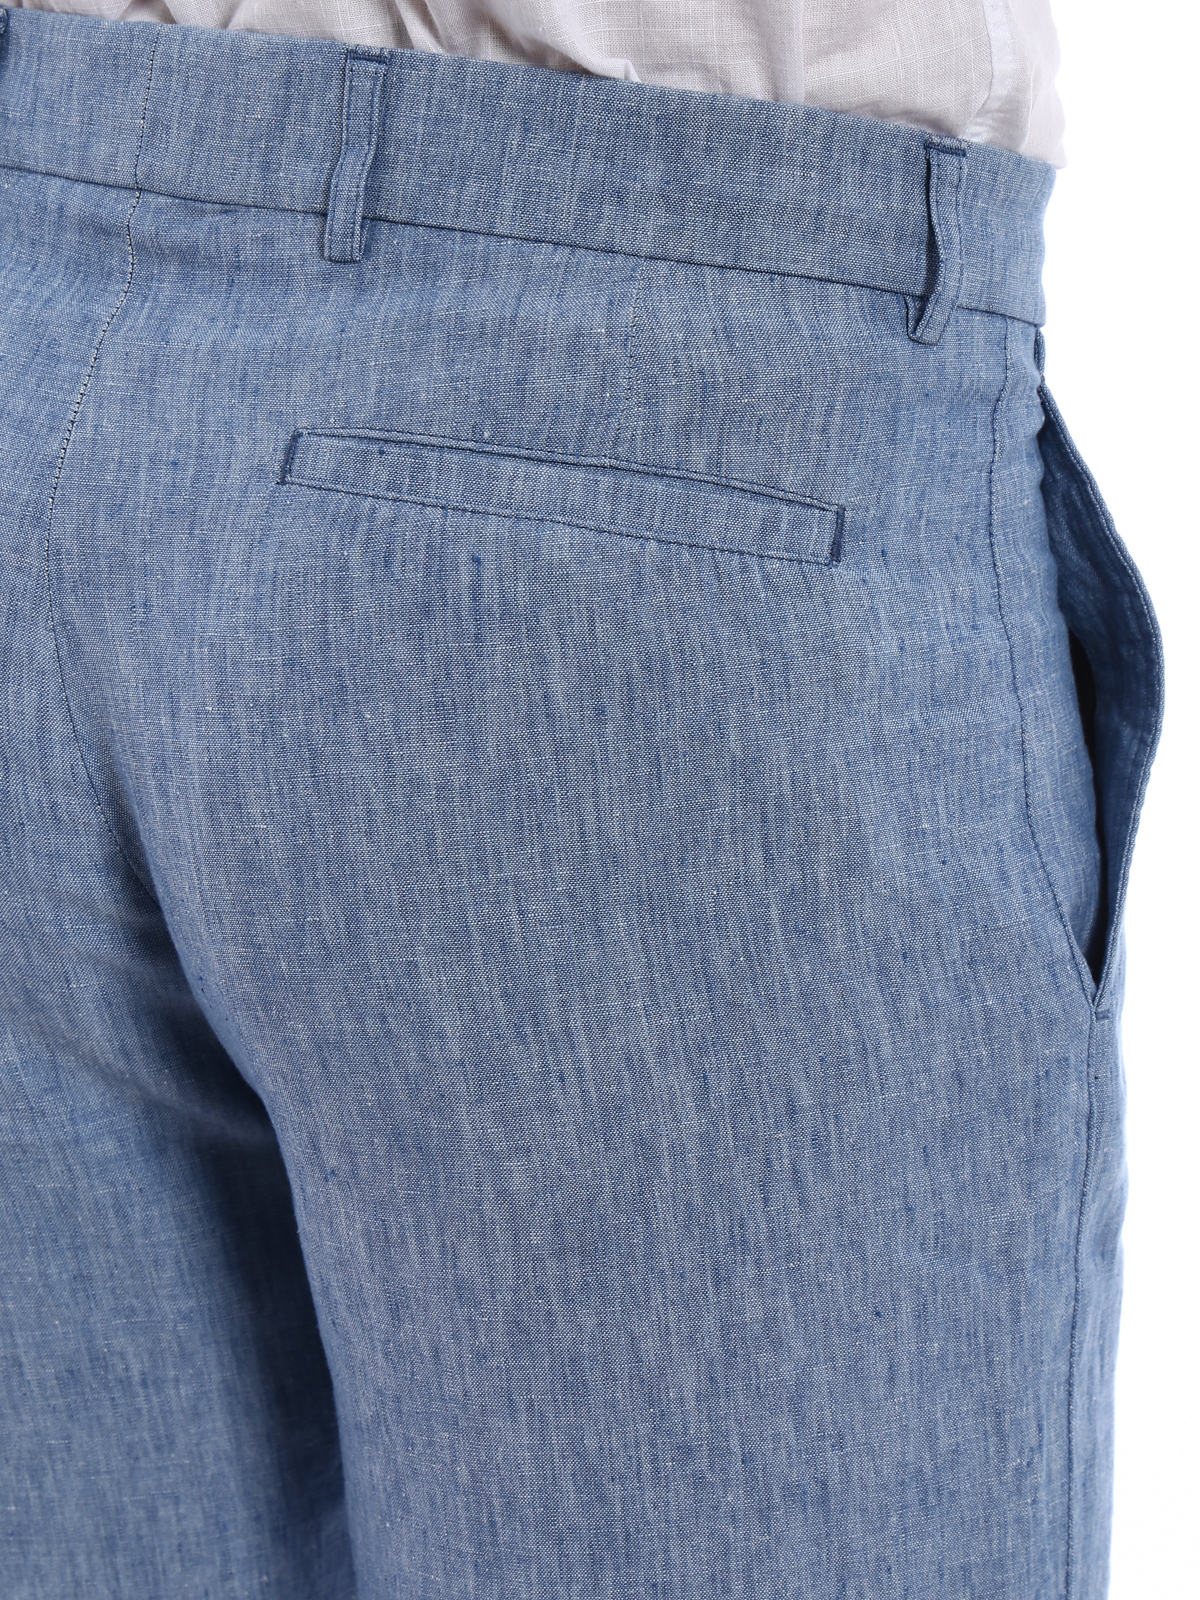 Basics  Denim trousers for women in light blue  Label Raasleela